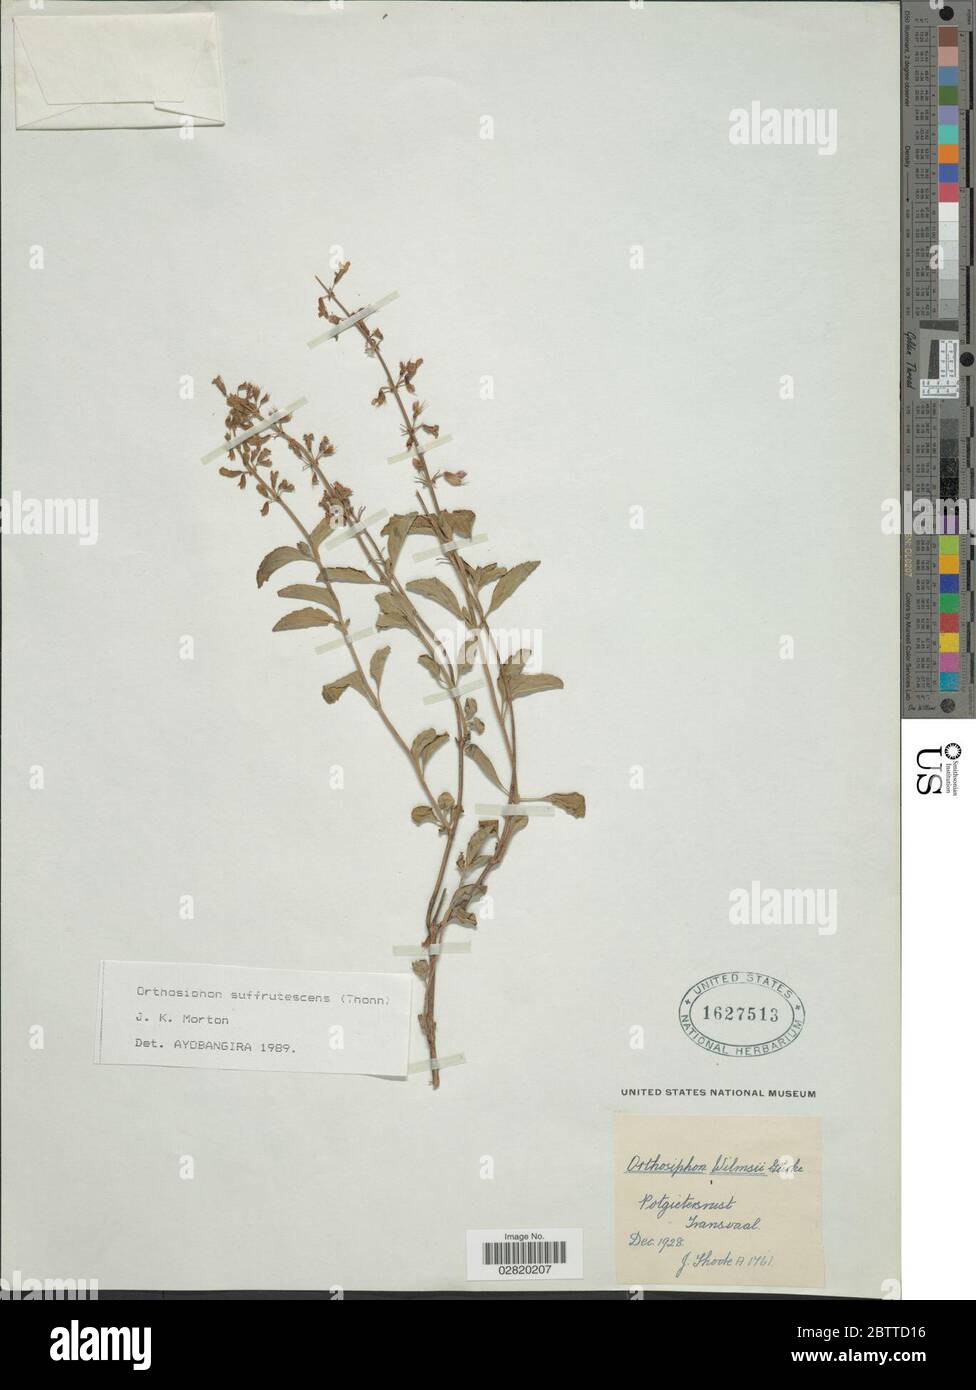 Orthosiphon suffrutescens Schumach JK Morton. Stock Photo